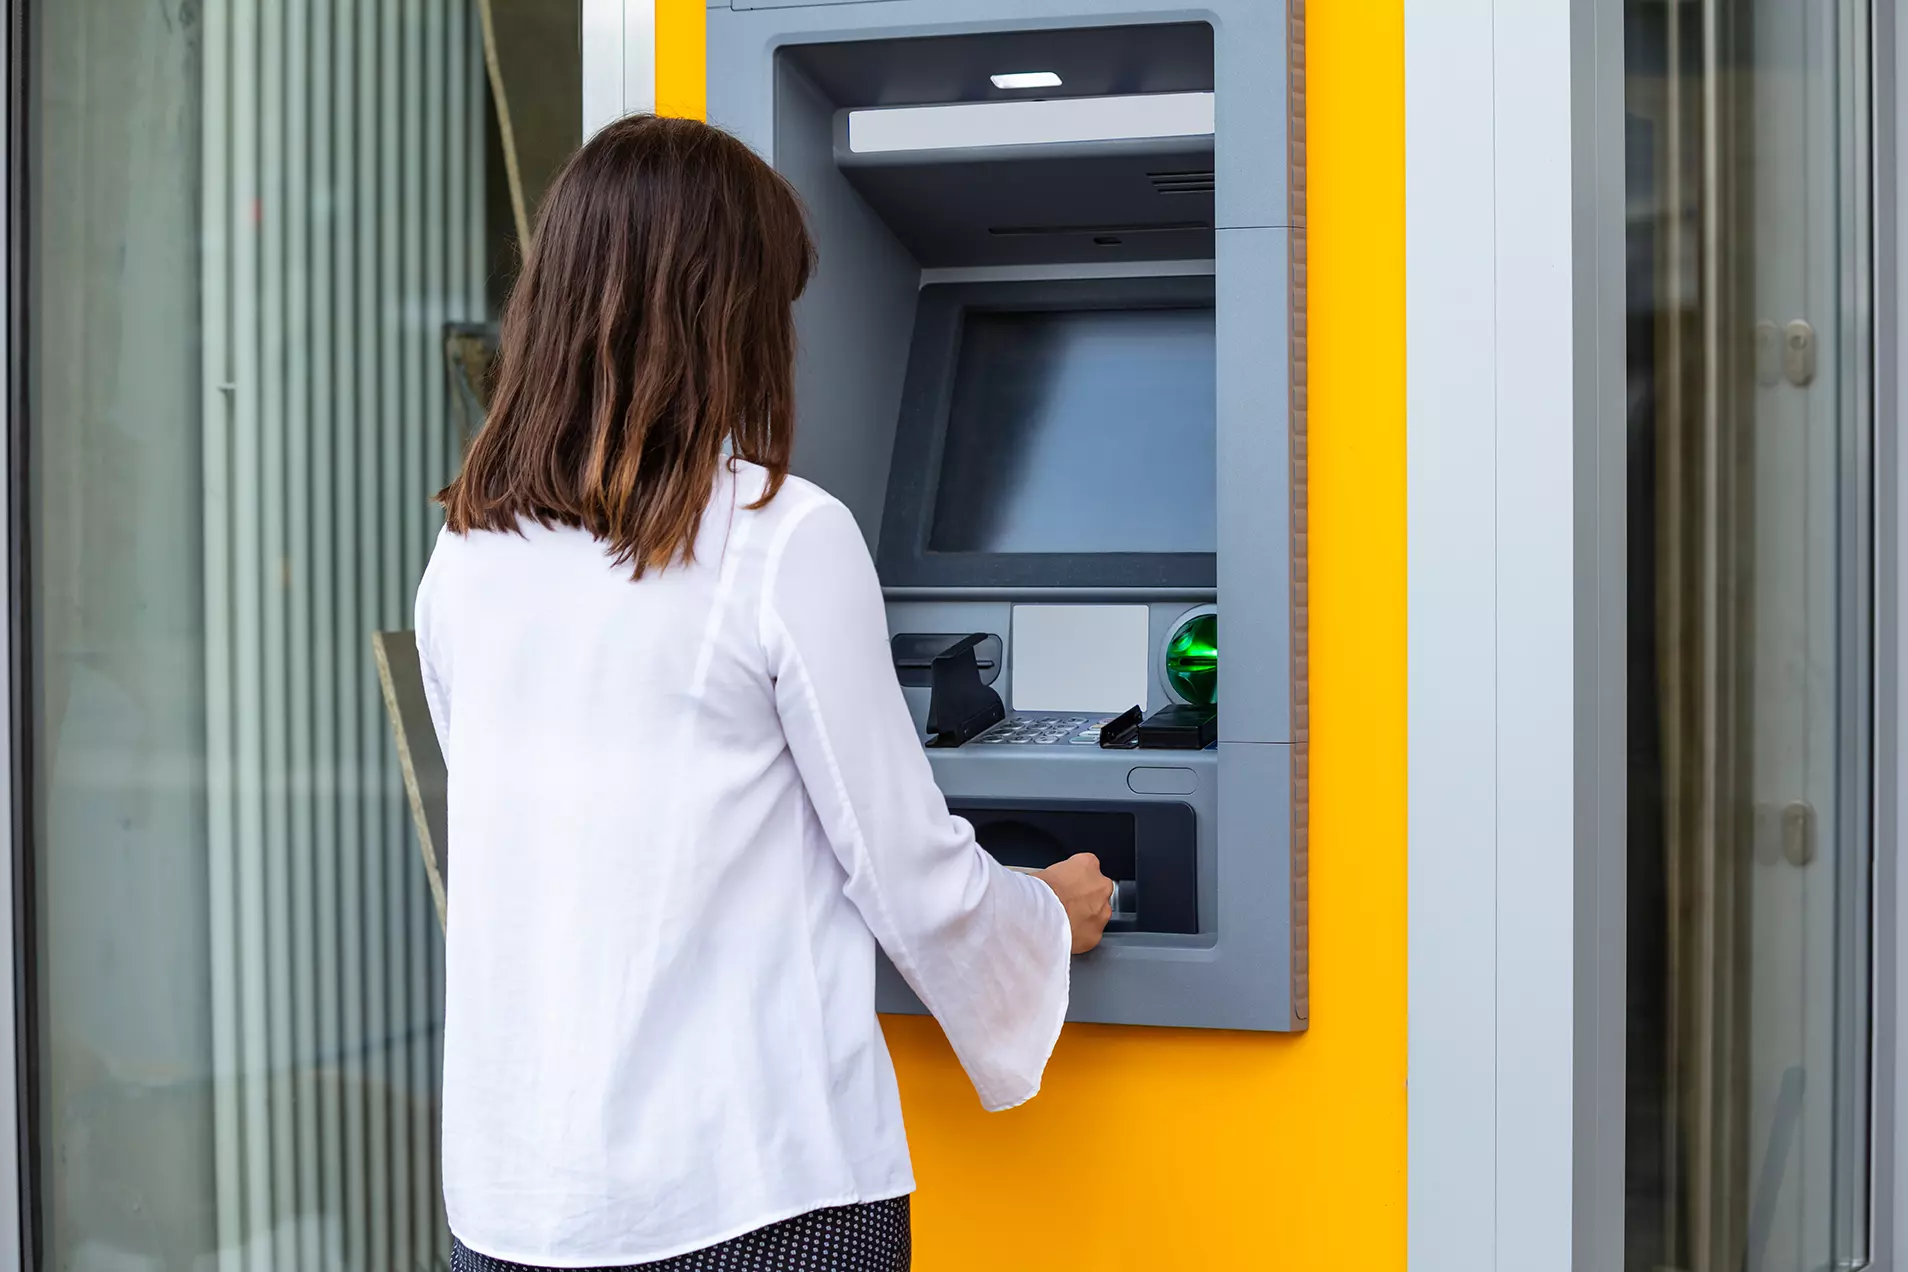 mujer en cajero automático representando que el FBI advierte sobre nueva estafa en cajeros que podría afectar a bancos de todo el mundo.